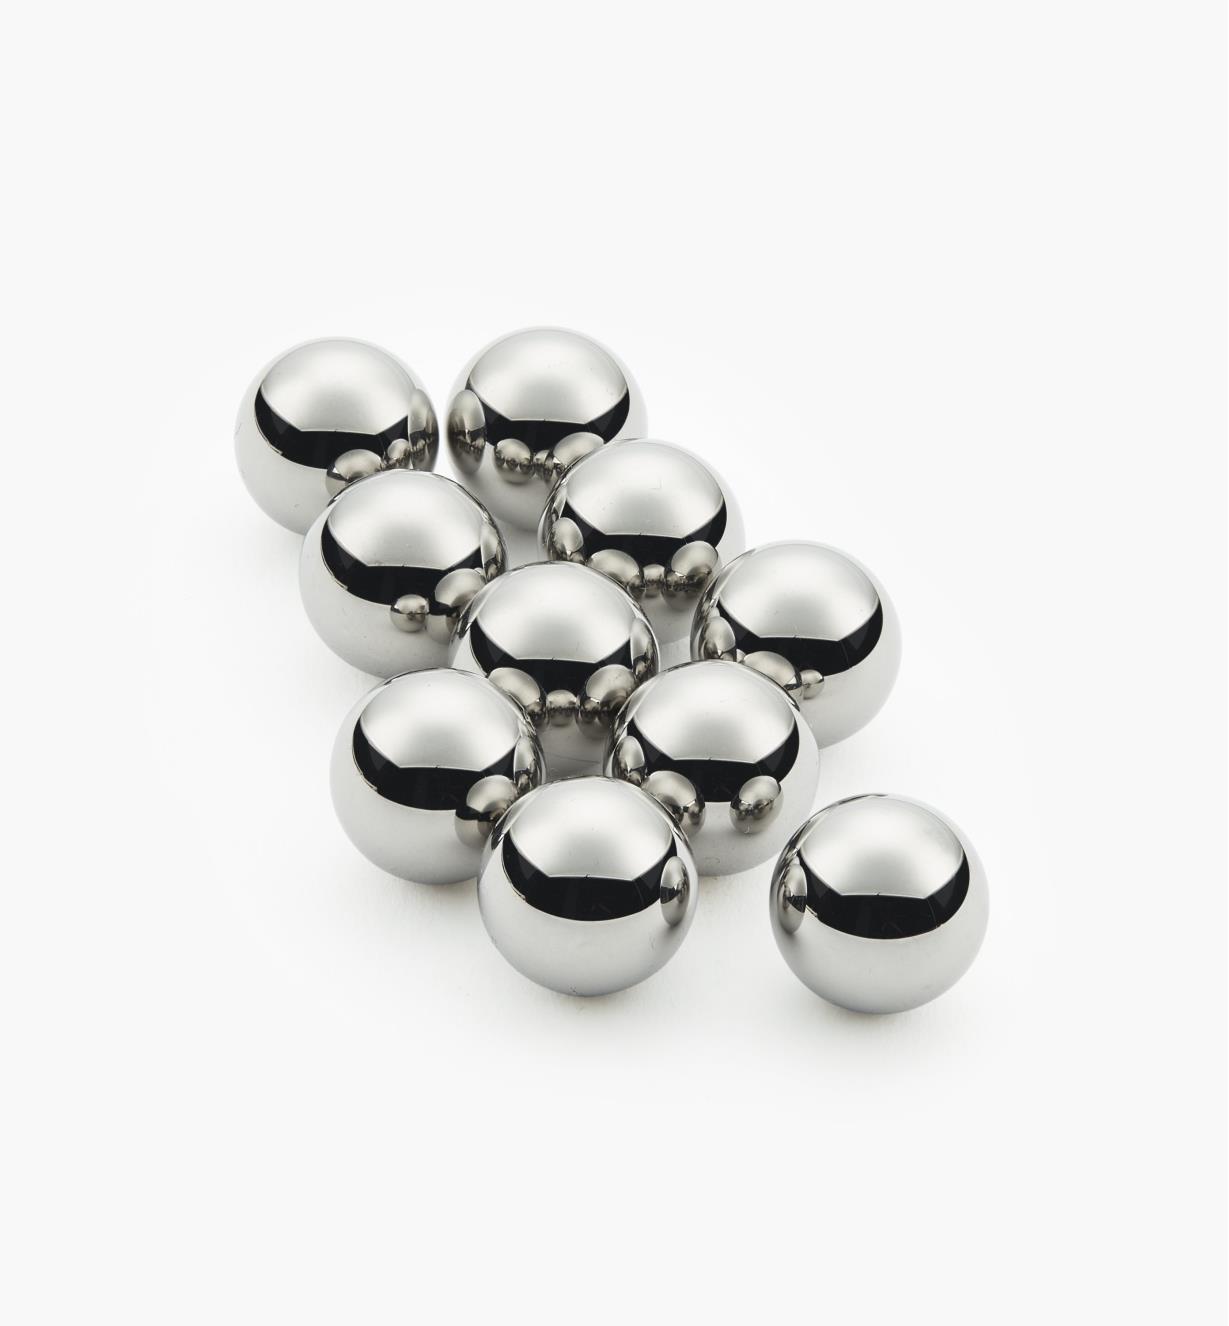 1000 x G16 Hardened Carbon Steel Loose Ball Bearings Bearing Balls Metal 1mm 